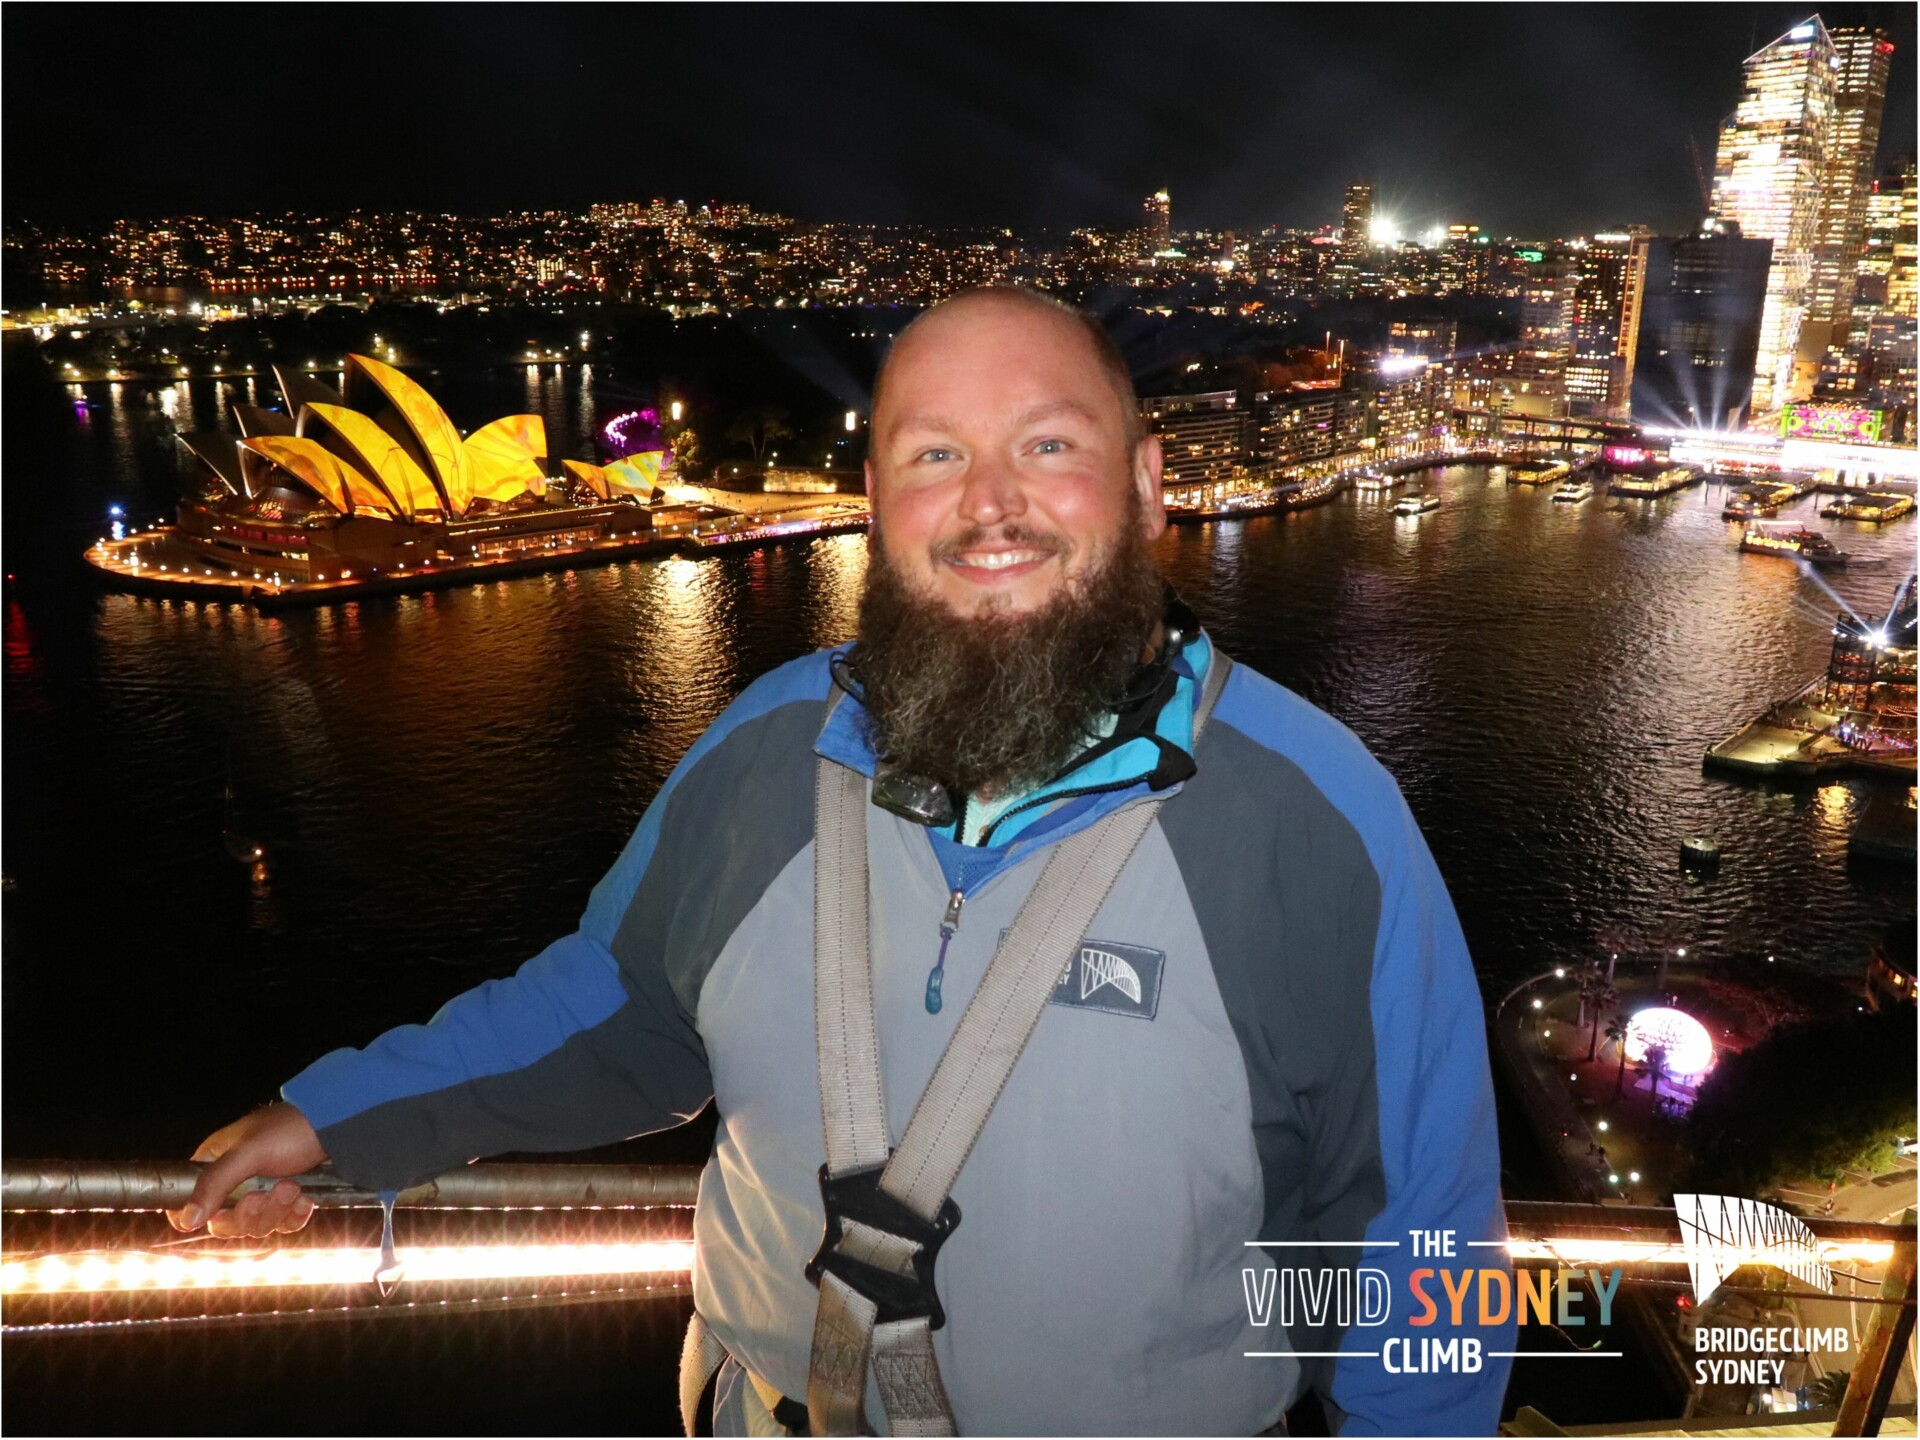 Ein lächelnder Mann mit Bart in Sicherheitsausrüstung steht auf einer Aussichtsplattform bei Nacht. Im Hintergrund ist die beleuchtete Skyline von Sydney mit dem markanten Sydney Opera House und der Hafenbrücke zu sehen. Lichter reflektieren im Wasser des Hafens, und die Stadt wirkt lebhaft beleuchtet. Textelemente im Bild weisen auf "The Vivid Sydney Climb" und "Bridgeclimb Sydney" hin.